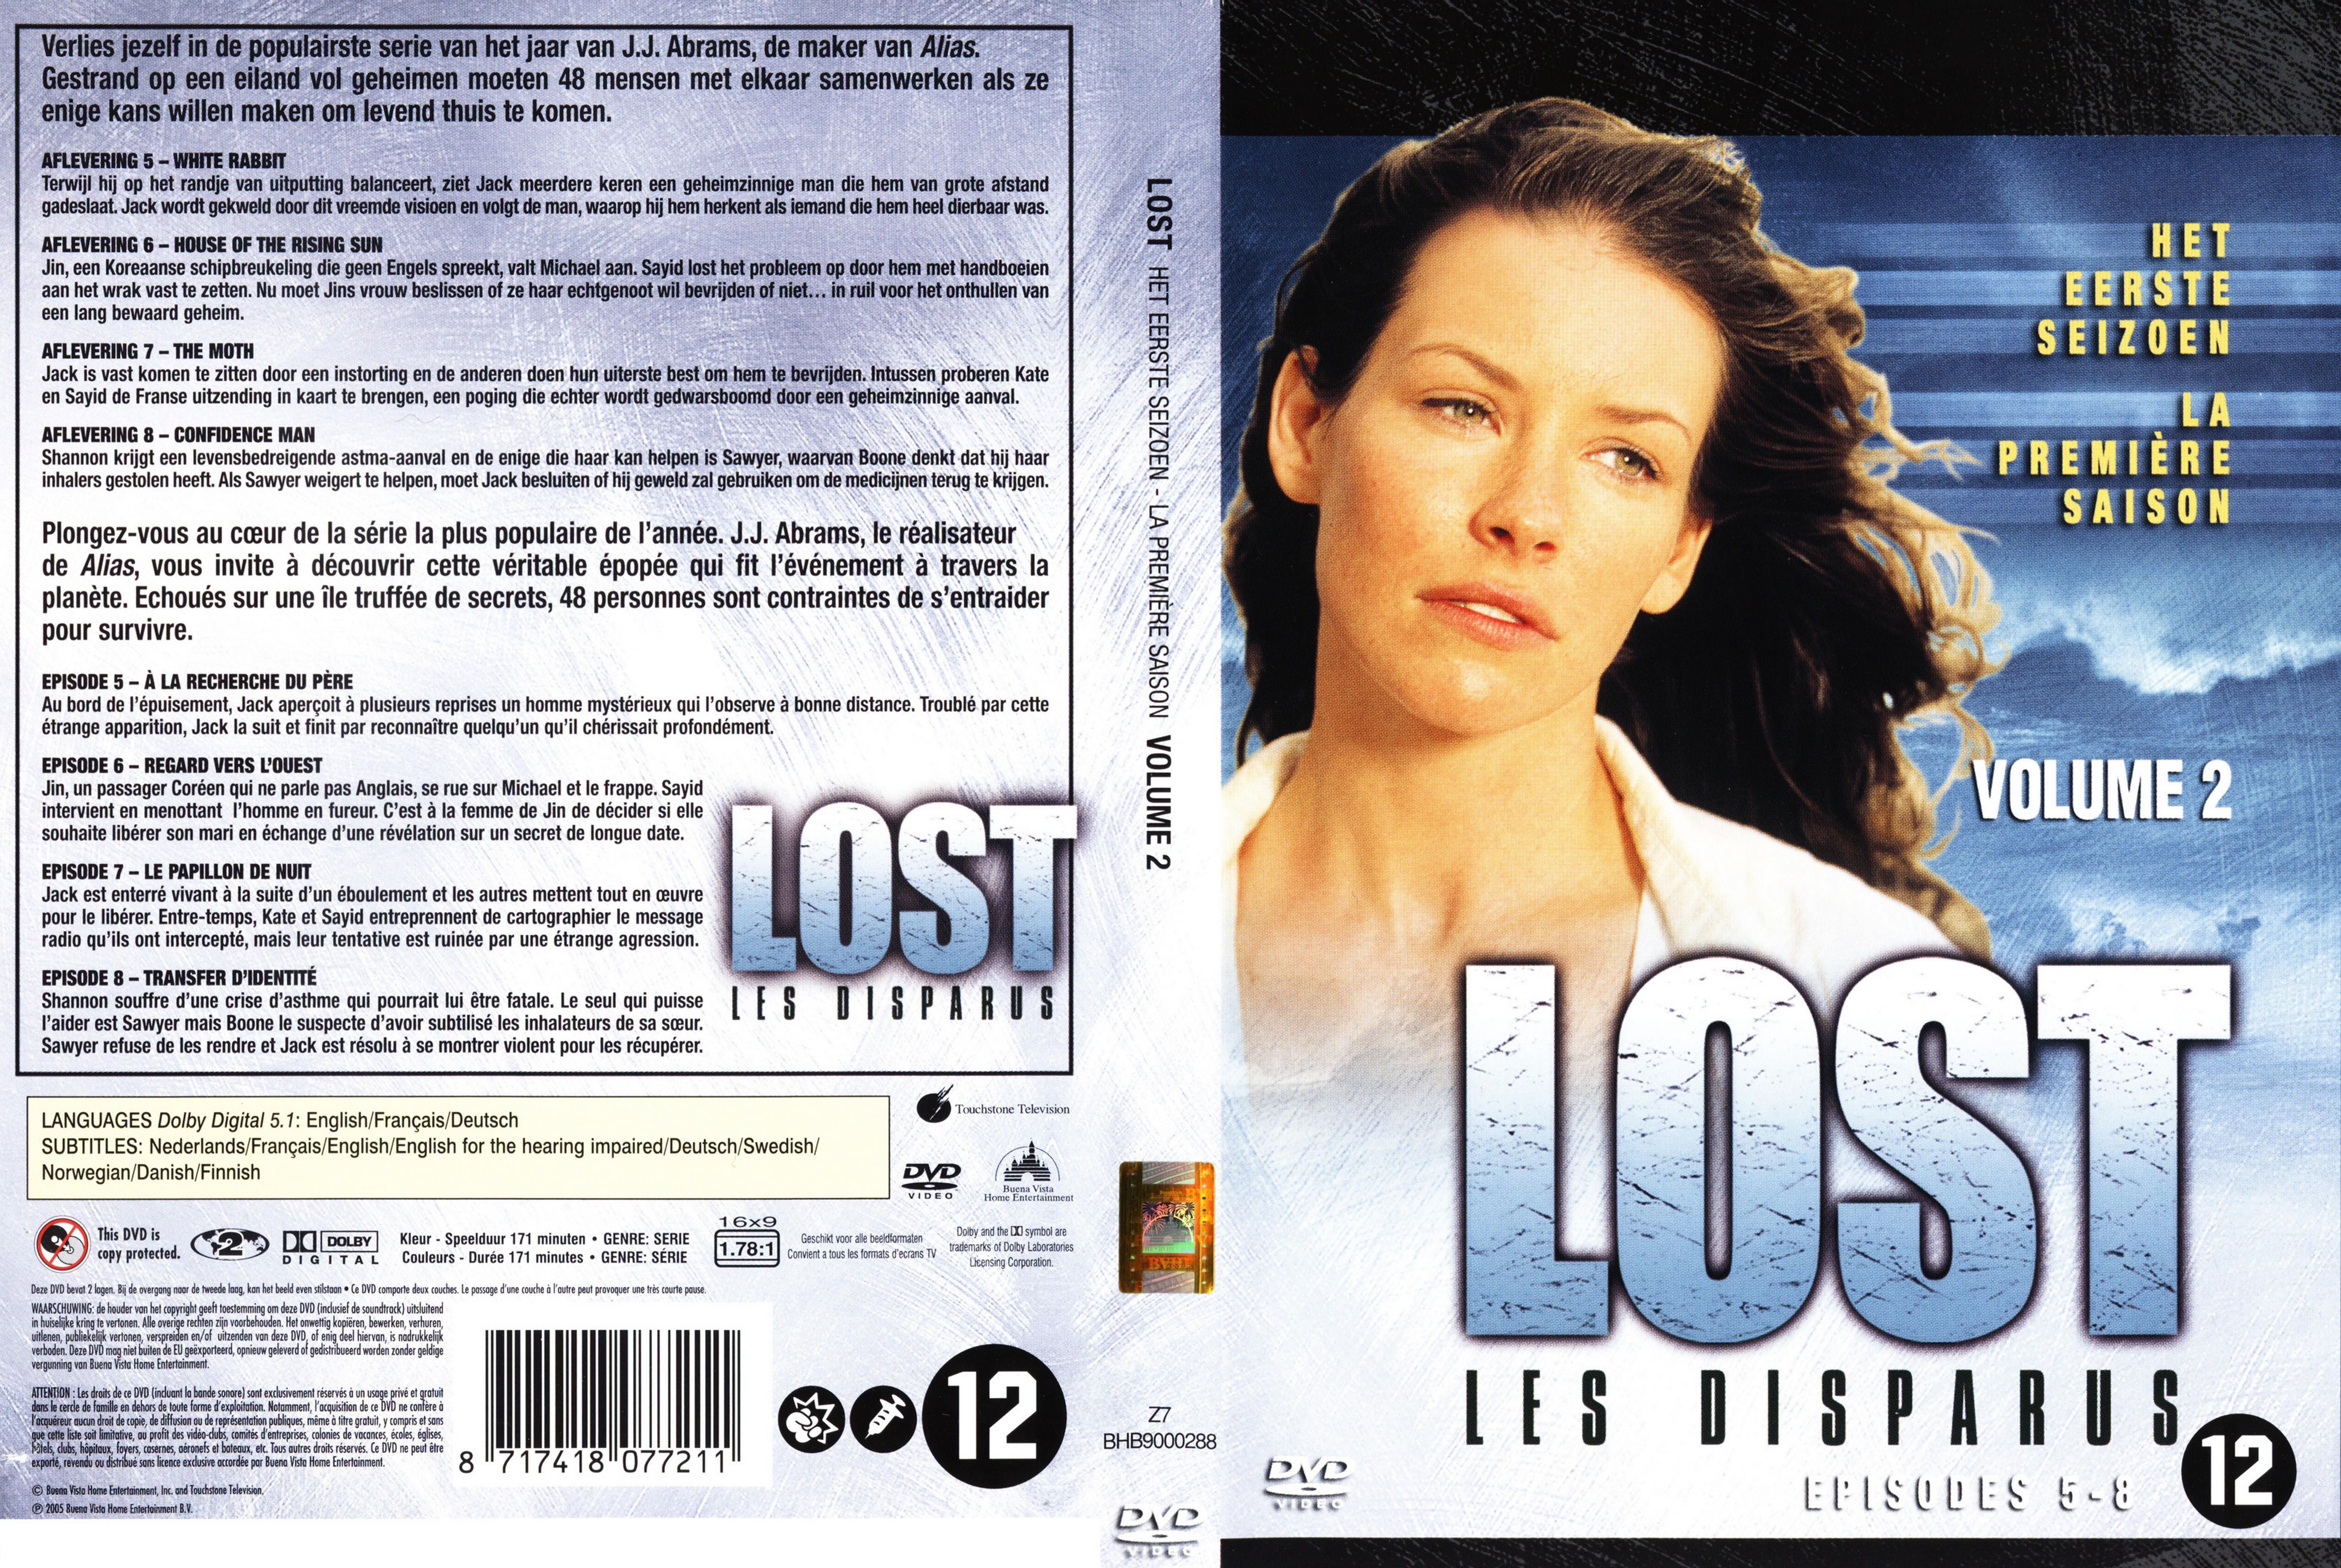 Jaquette DVD Lost Saison 1 DVD 2 v2